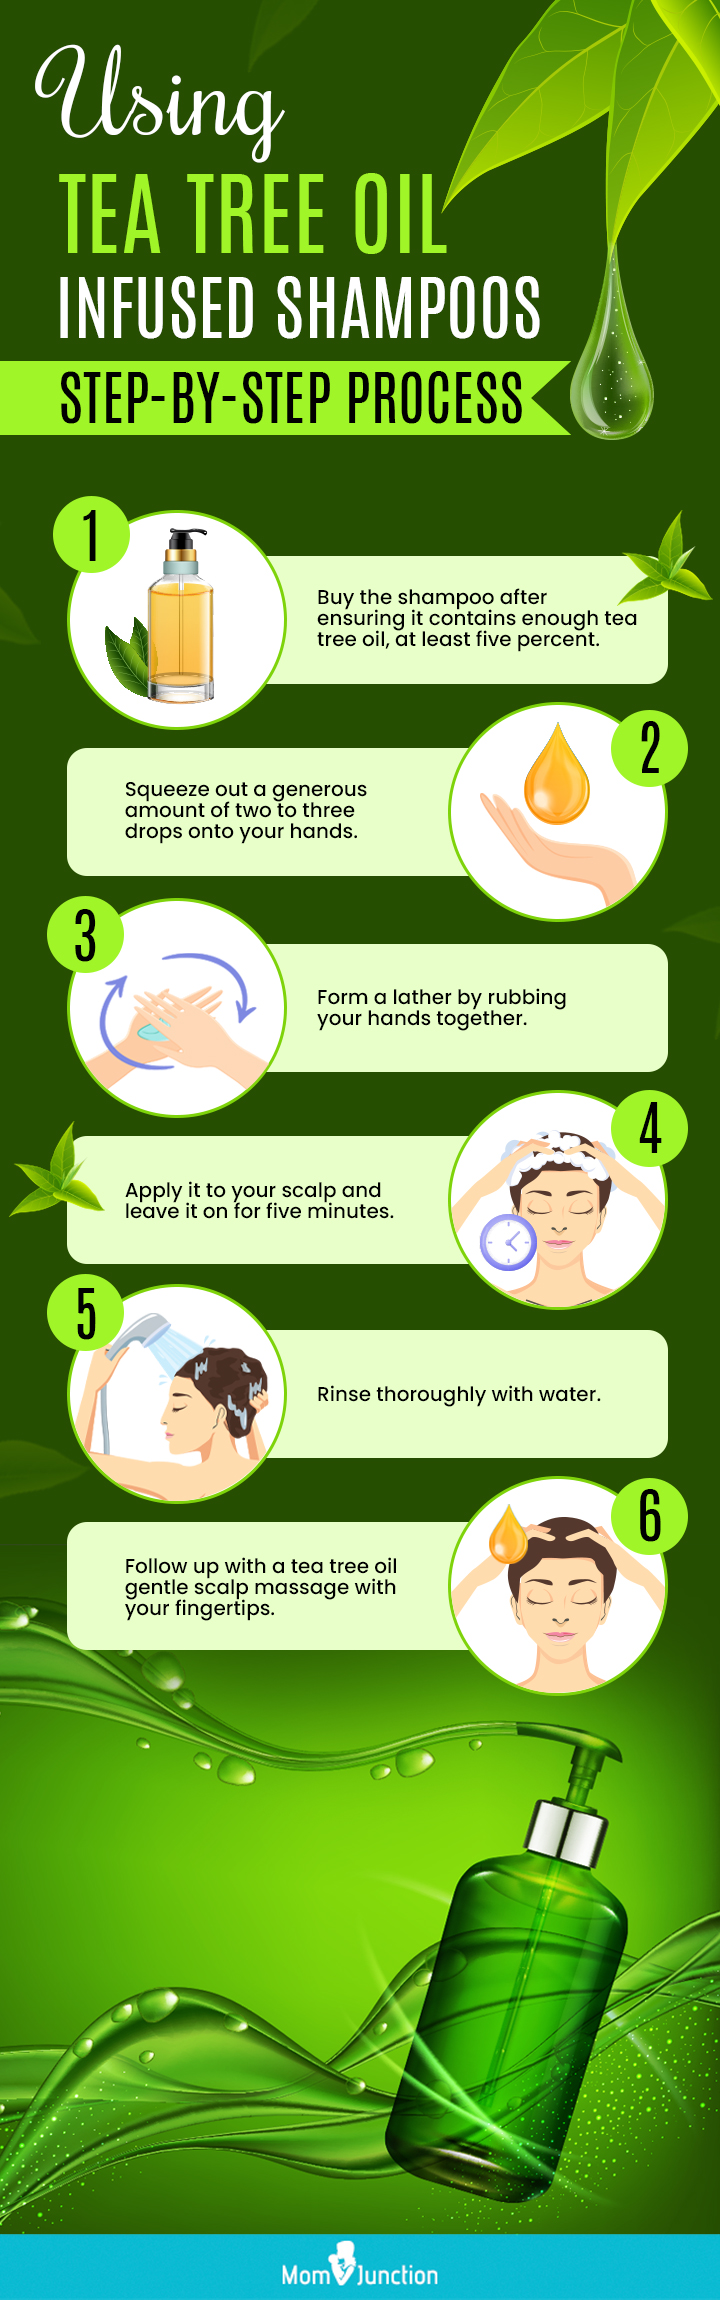 How To Use Tea Tree Oil Shampoos?